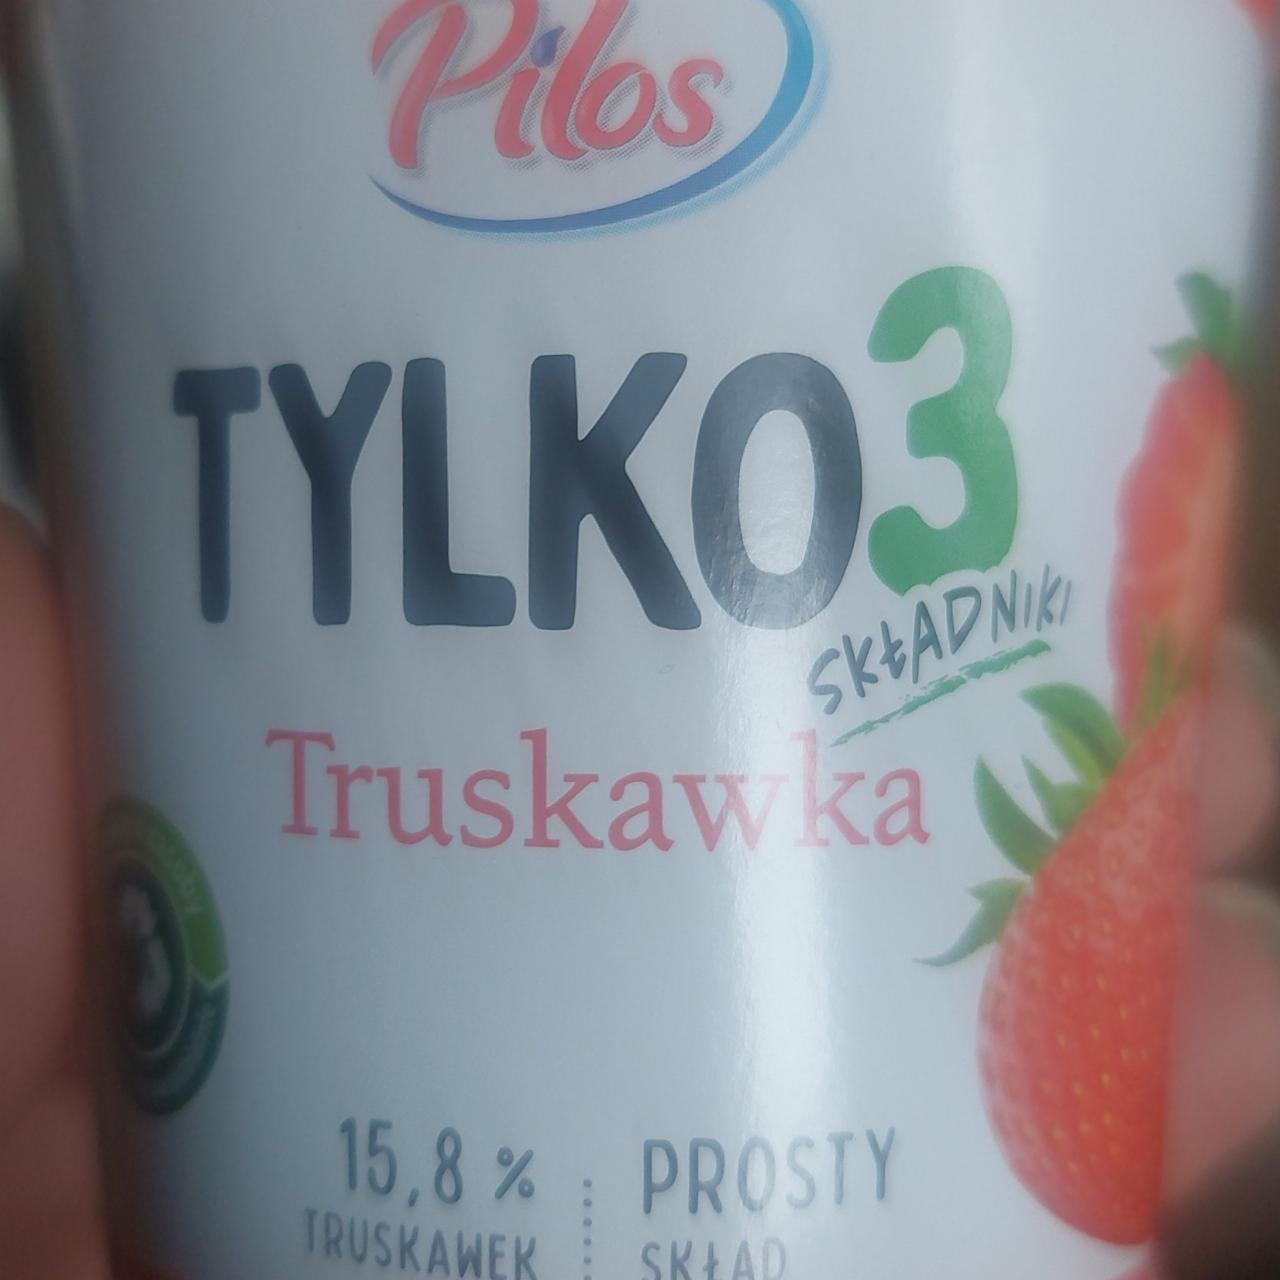 Zdjęcia - Tylko 3 składniki truskawka Pilos